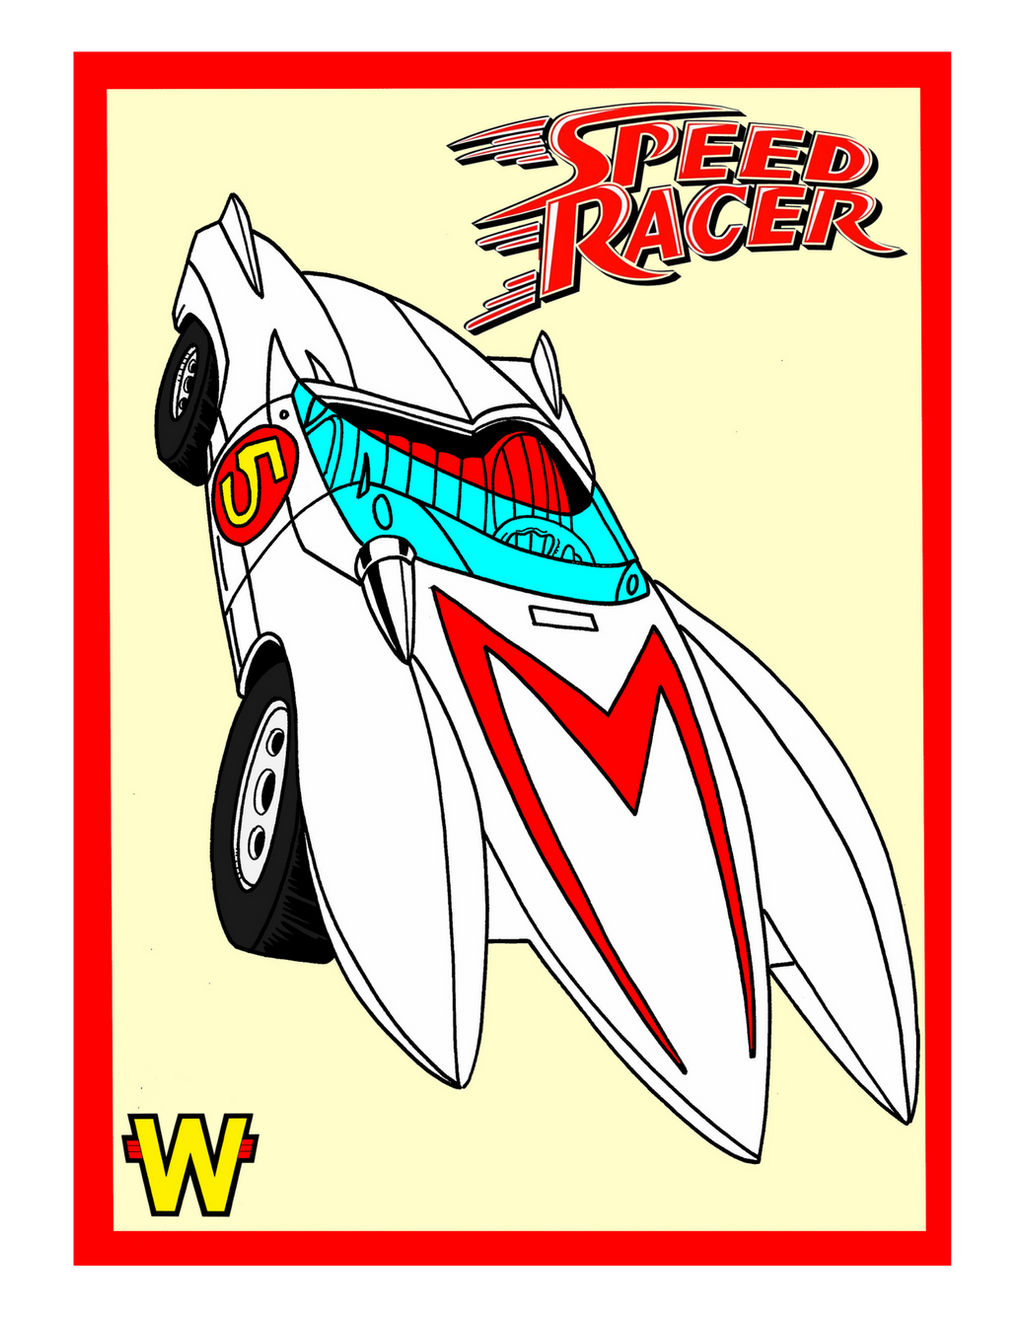 Speed Racer Mach 5 by professorwagstaff on DeviantArt